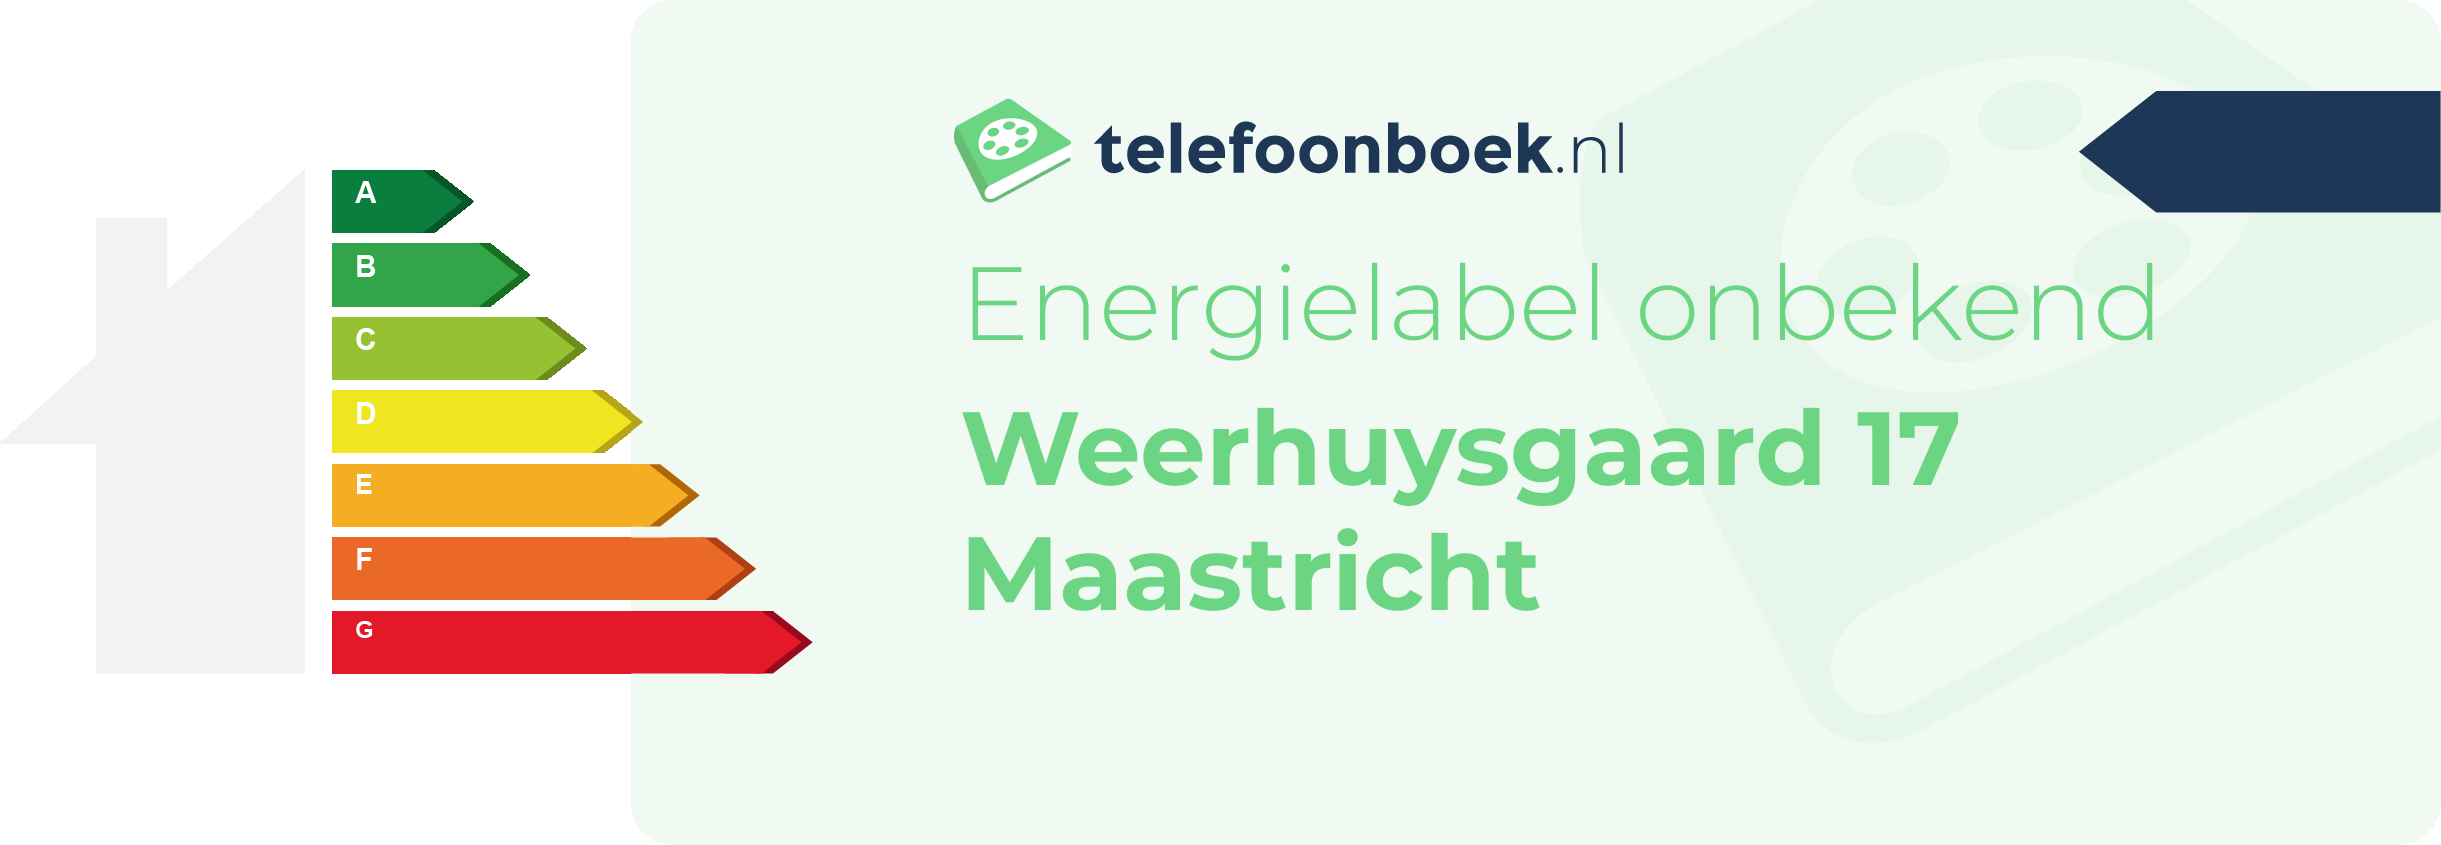 Energielabel Weerhuysgaard 17 Maastricht